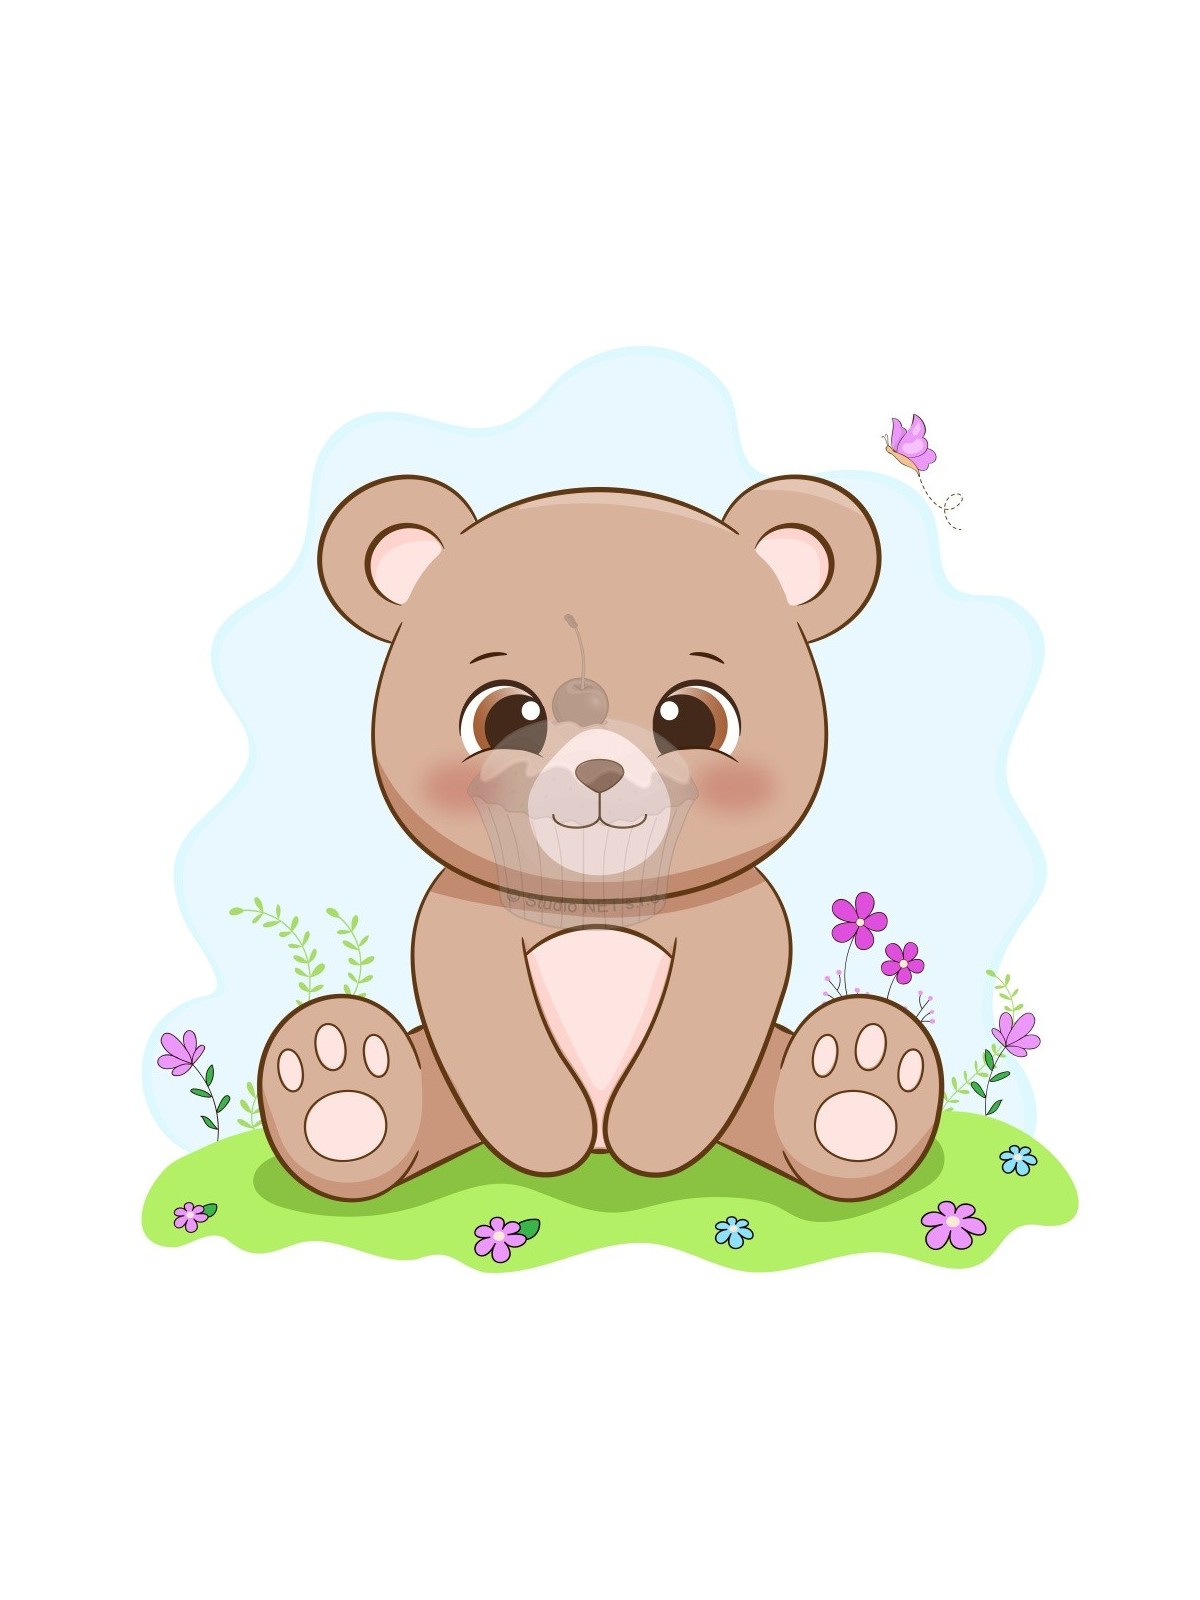 Edible paper "Teddy bear baby" A4